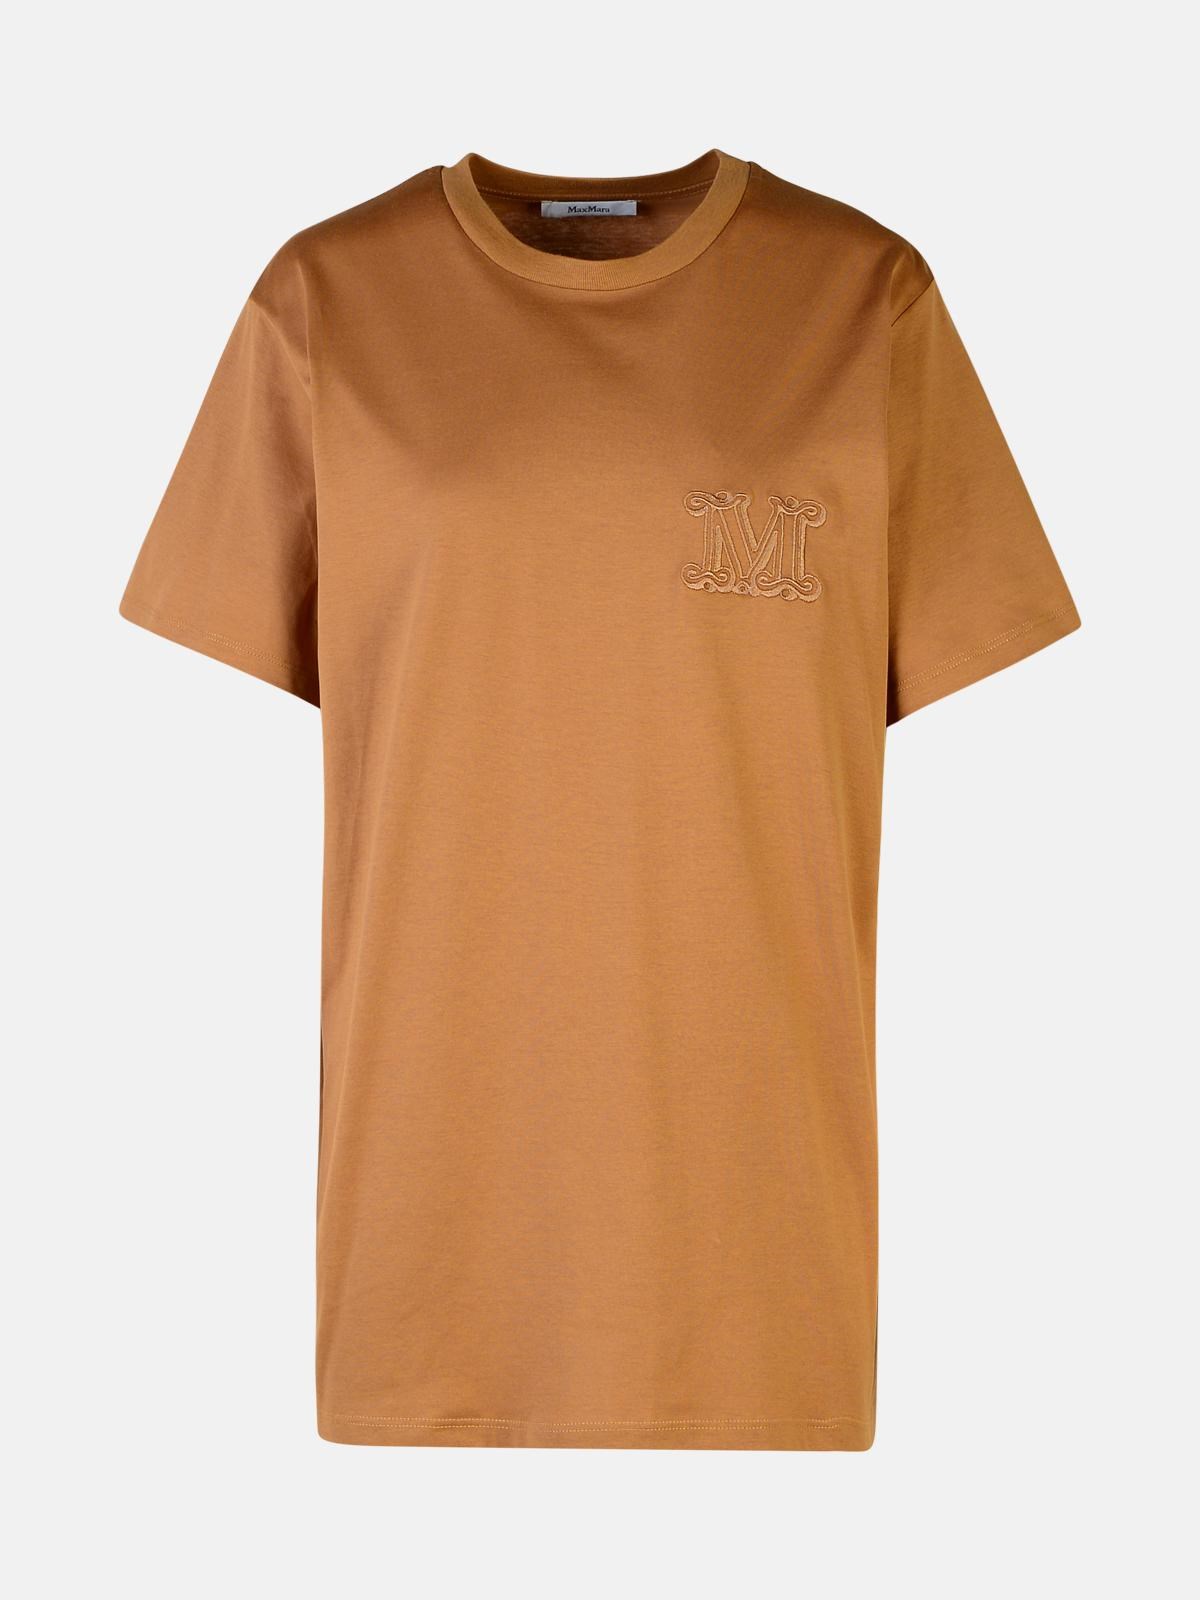 Max Mara Brown Cotton T-shirt